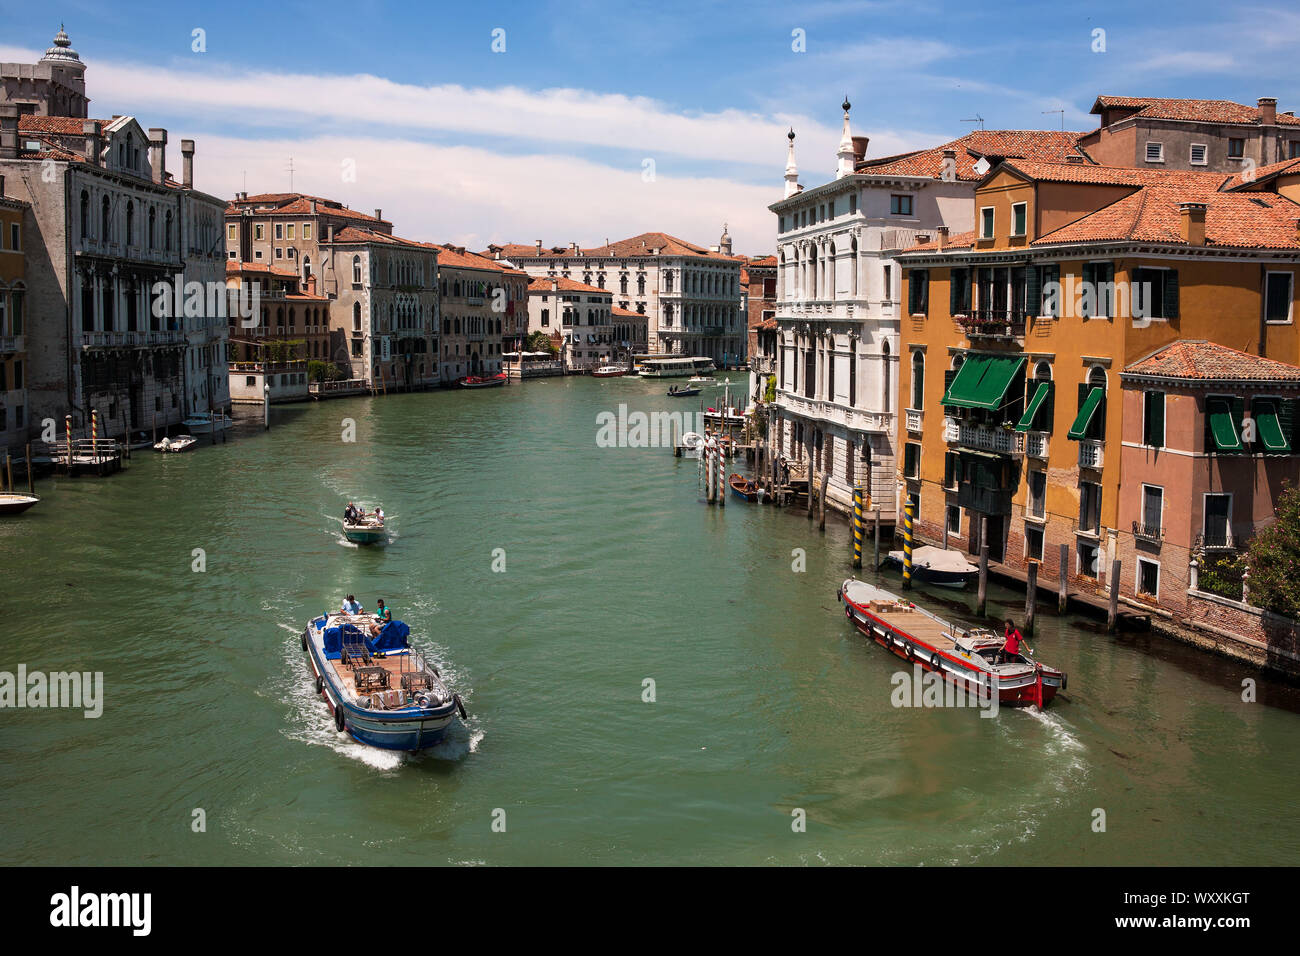 Le Grand Canal, du Ponte dell'Accademia, Venise, Italie Banque D'Images